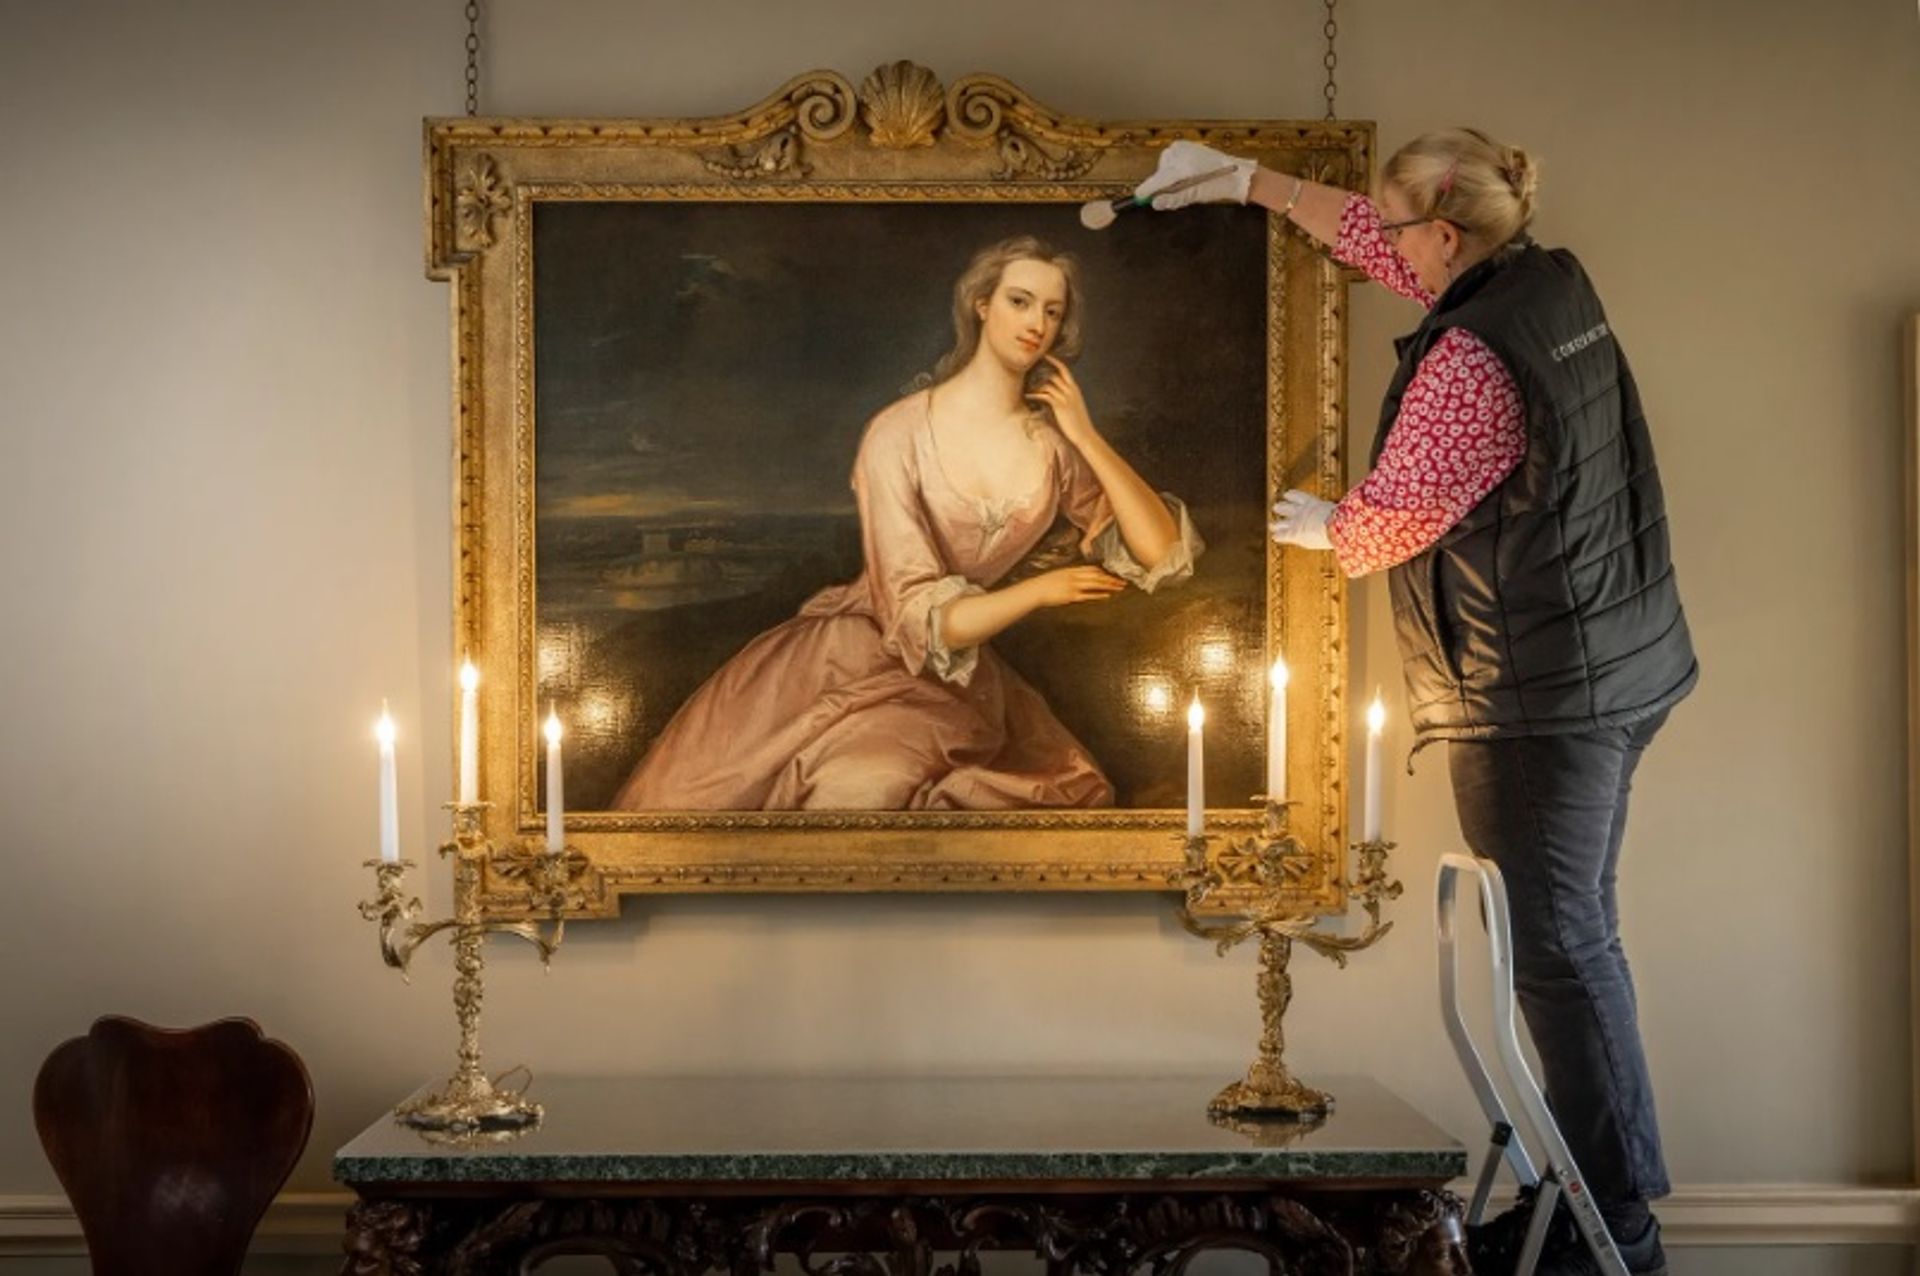 קייט פרקס, משמרת האוספים של מארבל היל מנקה את הדיוקן של הנרייטה הווארד, רוזנת סאפוק, באולם הטטרה של המבנה

צילום: Christopher Ison © English Heritage